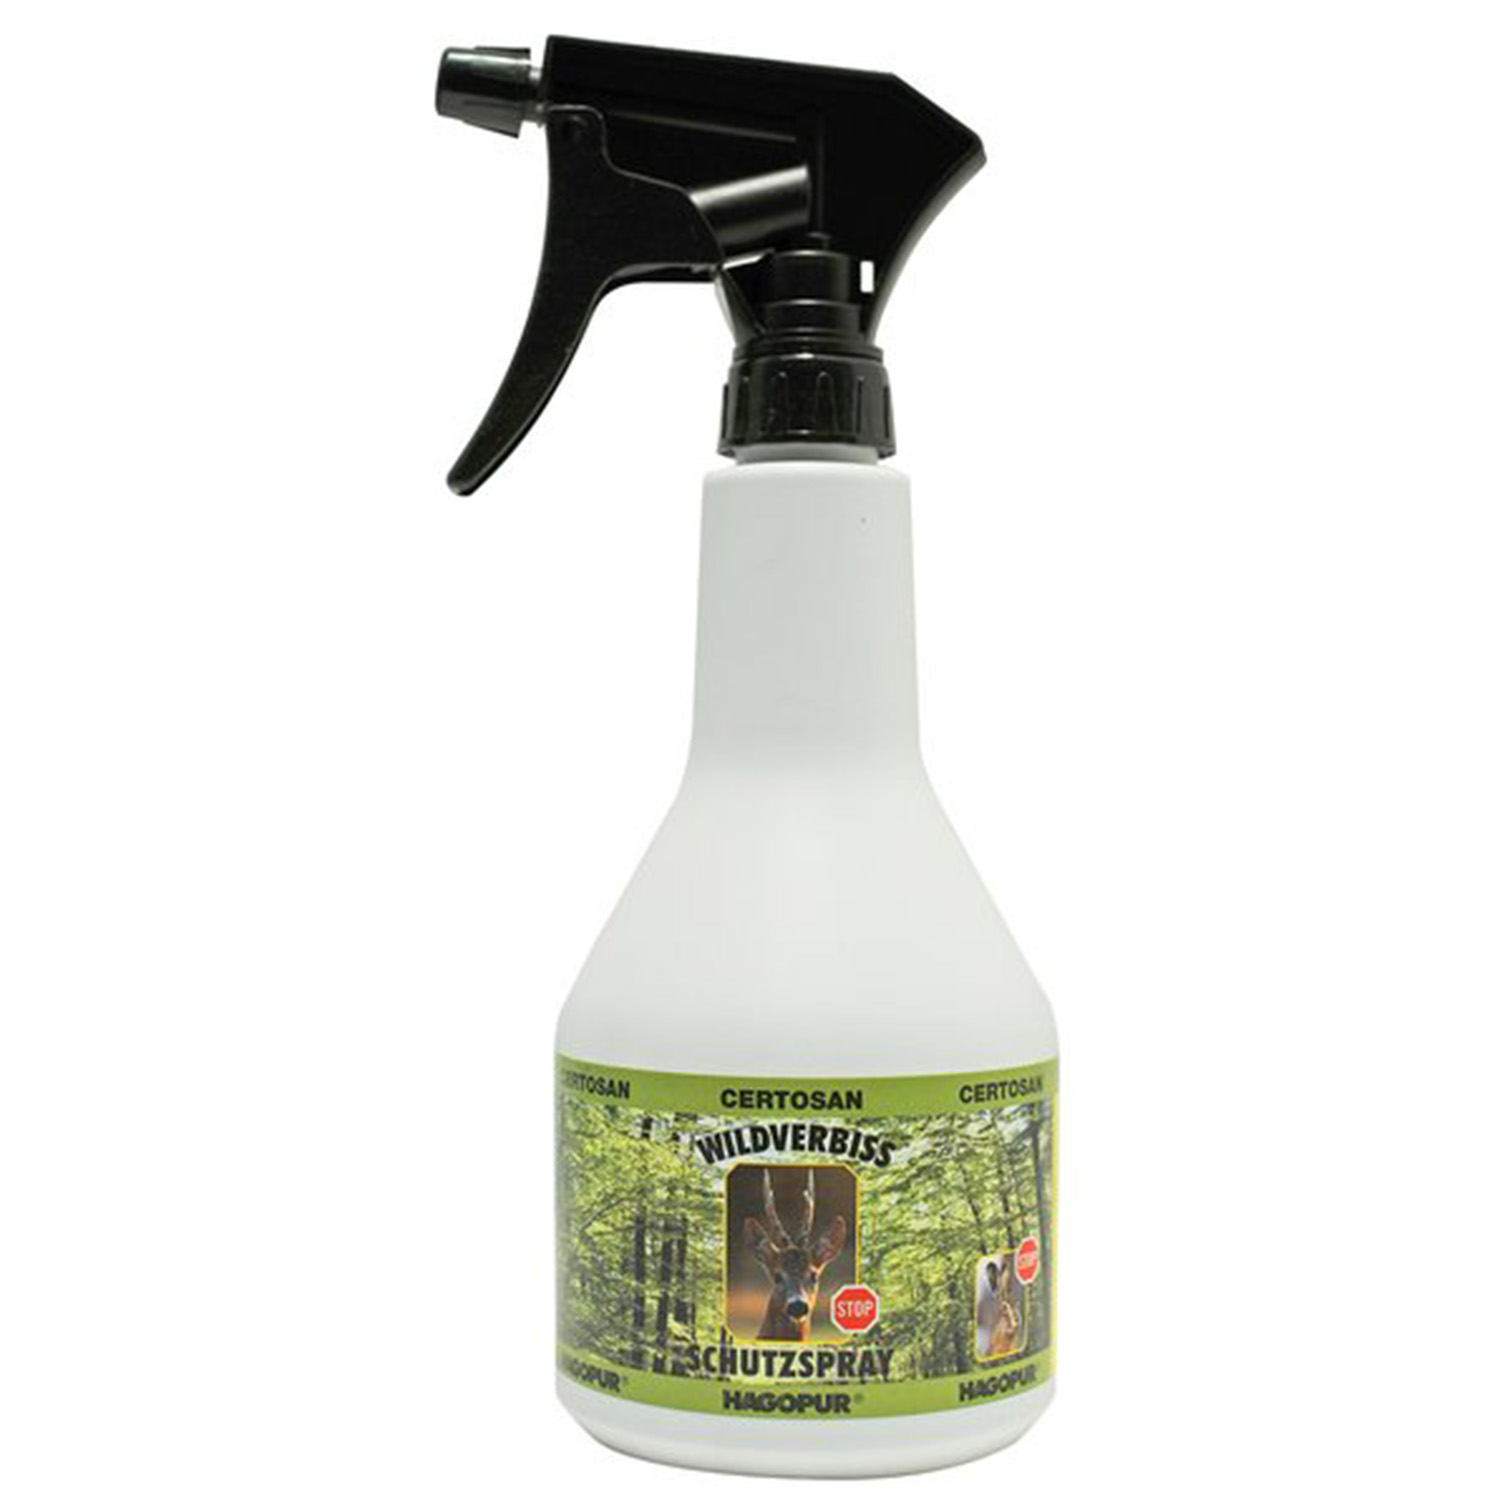  Hagopur Pump spray bottle Certosan - Game Deterrence